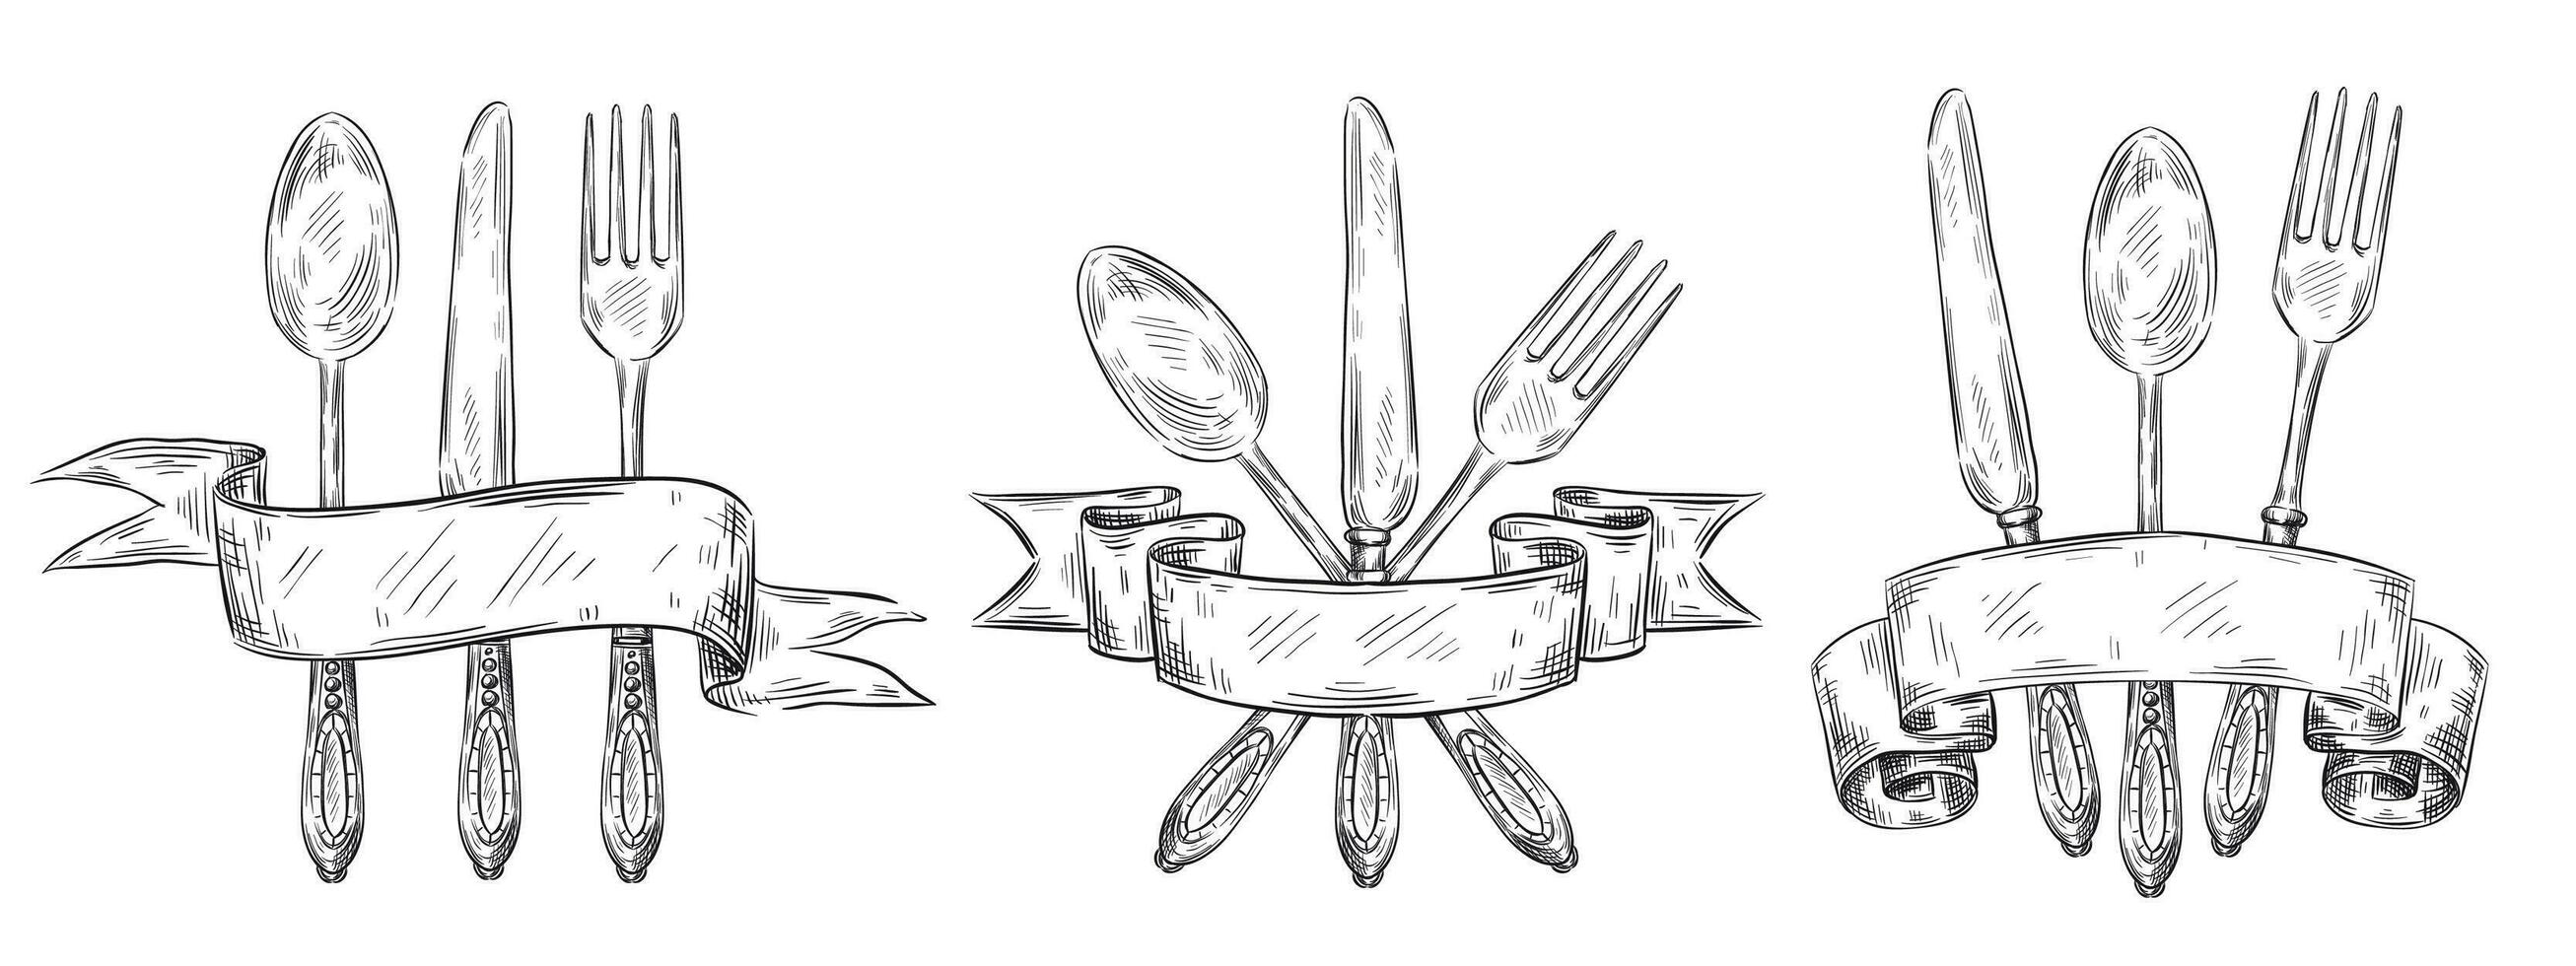 Besteck mit Schleife. Jahrgang Tabelle Rahmen Gravur, Hand gezeichnet Gabel, Messer und Essen Löffel skizzieren Vektor Illustration einstellen